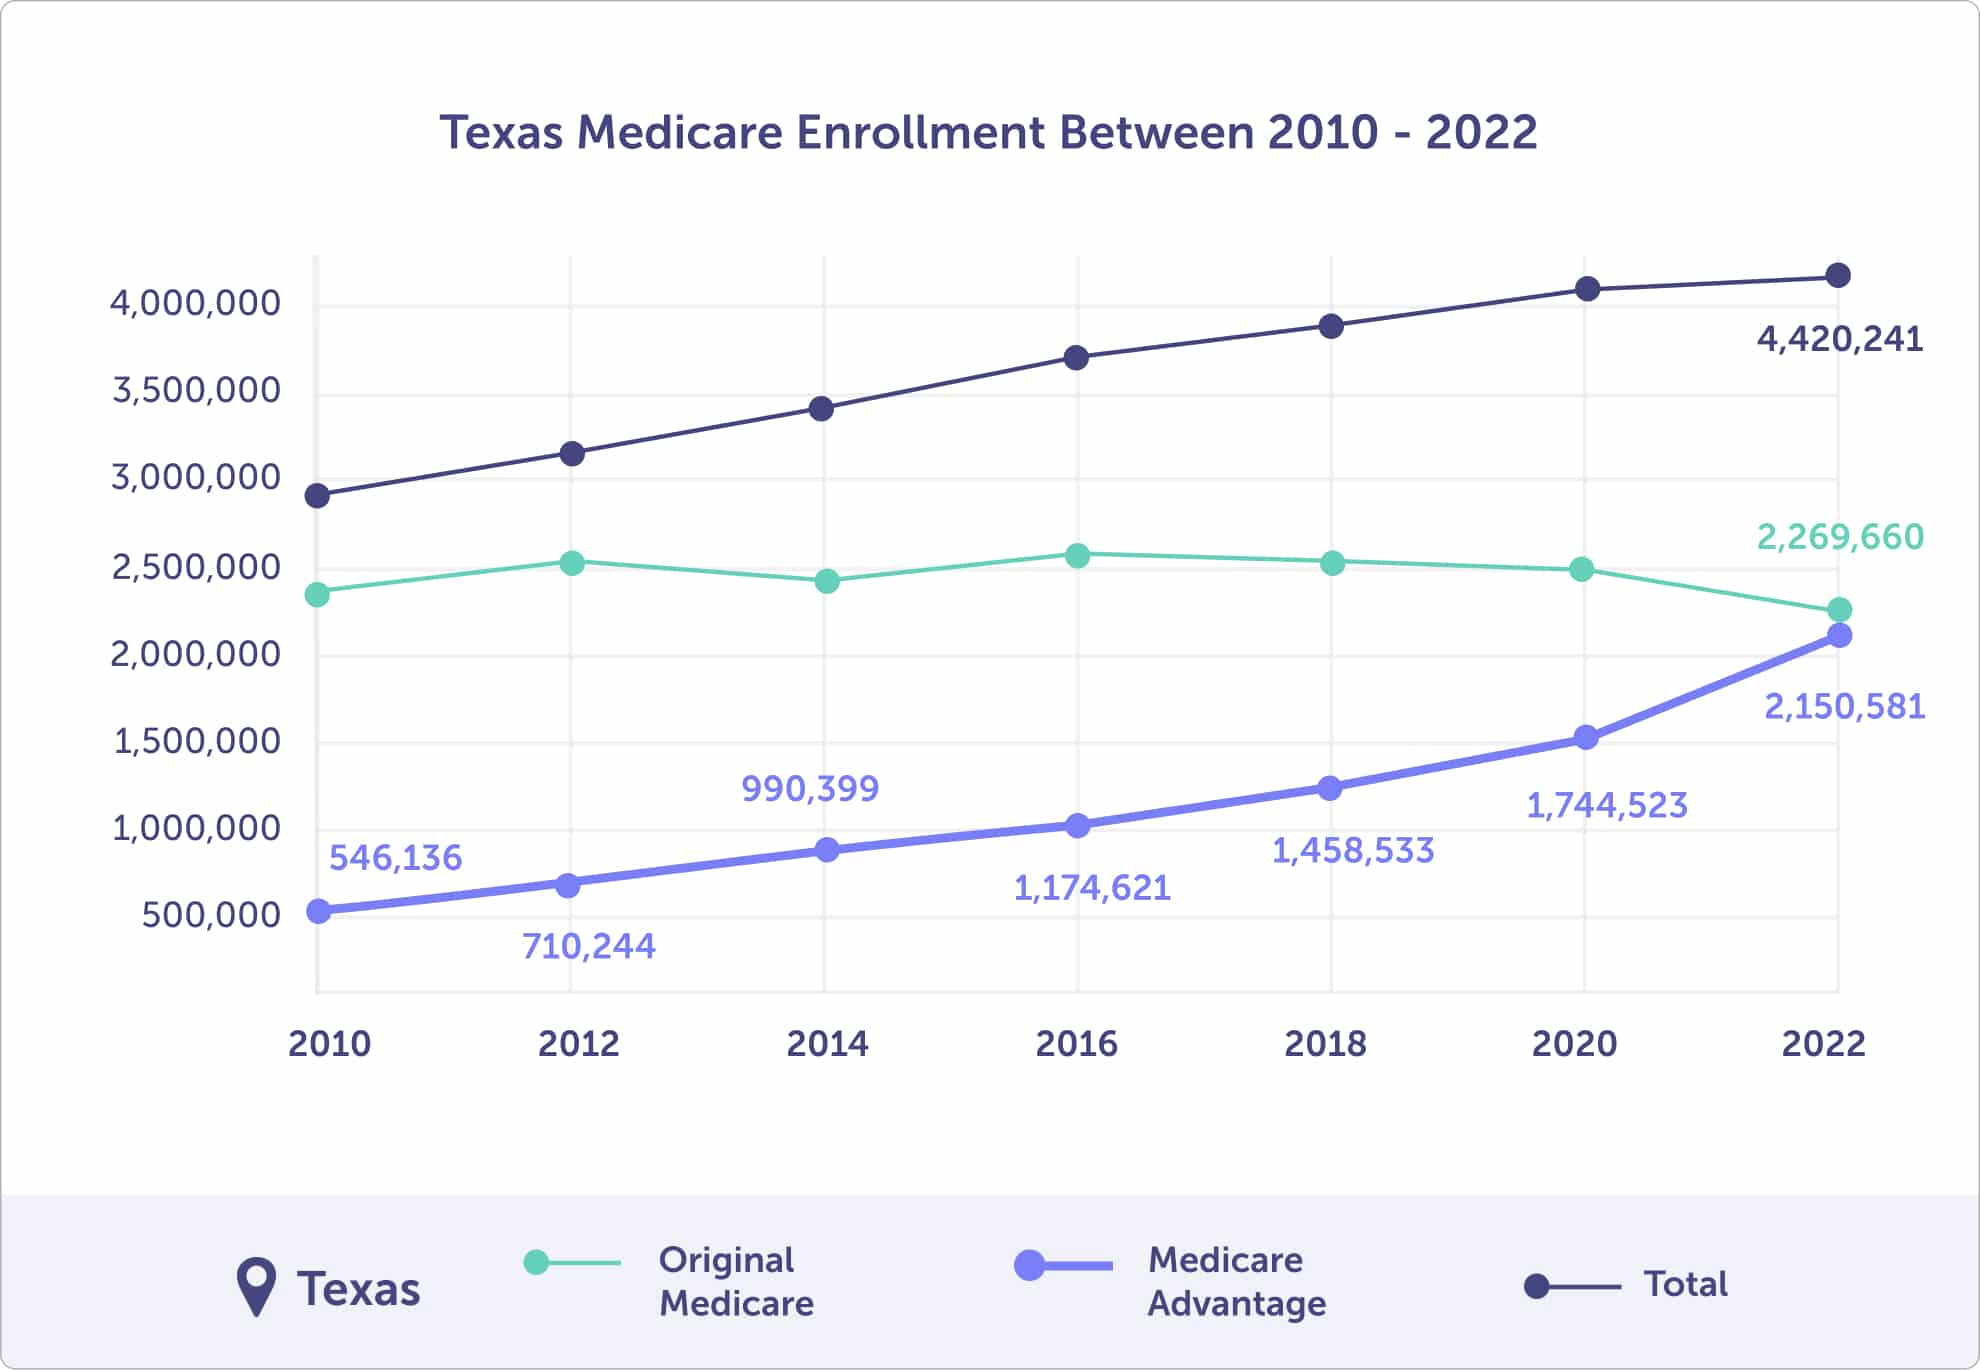 Texas Medicare Enrollment Between 2010 and 2022